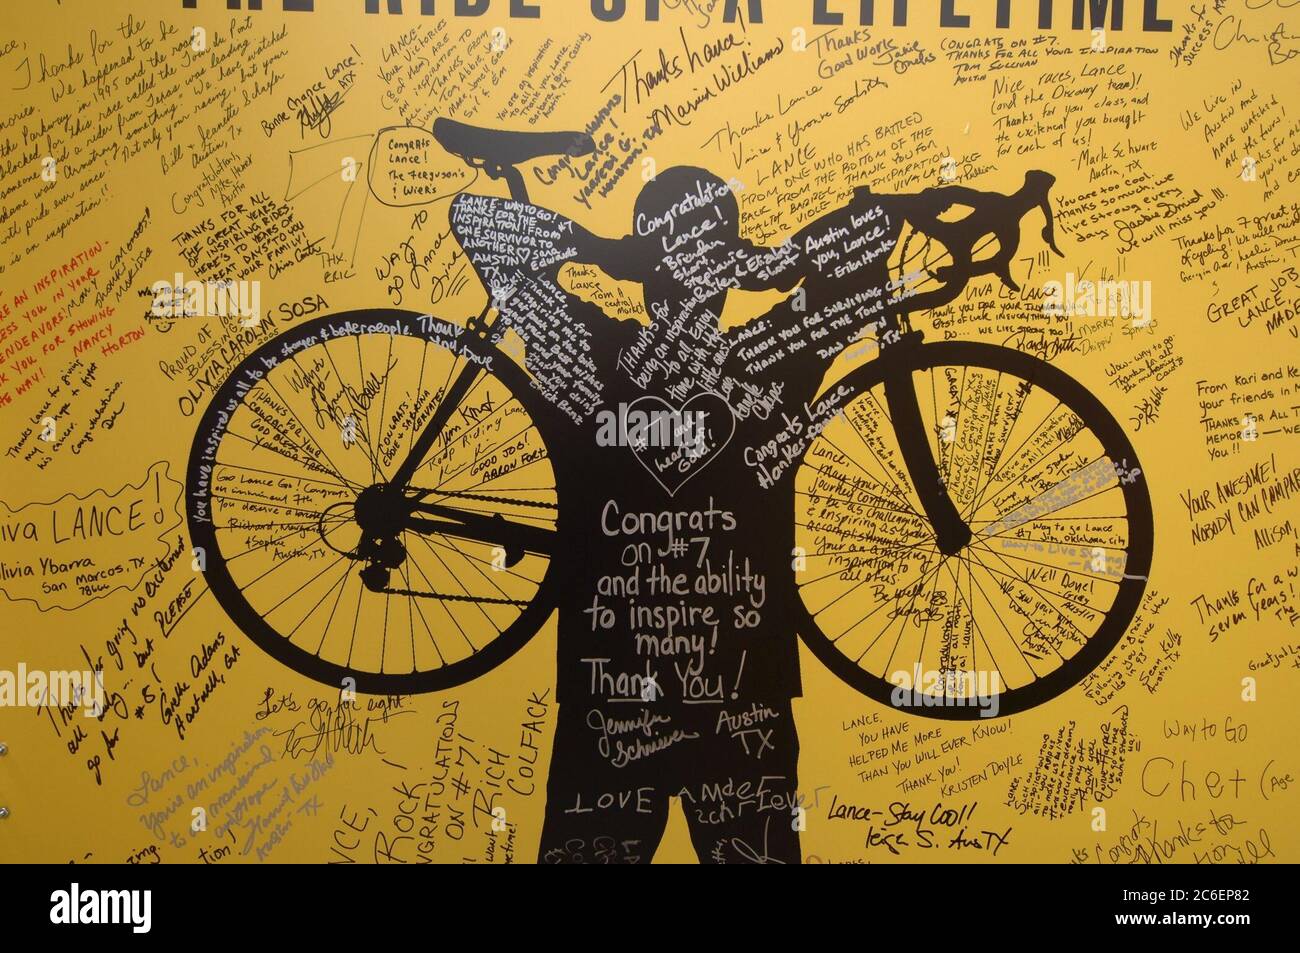 Austin, Texas USA, 24. Juli 2005: Radsportfans feiern den siebten Sieg des Heimathelden Lance Armstrong bei der Tour de France. Hunderte versammelten sich, um Botschaften auf großen Plakaten zu unterschreiben und das Finale in einem lokalen Einkaufszentrum im Freien zu sehen. ©Bob Daemmrich Stockfoto